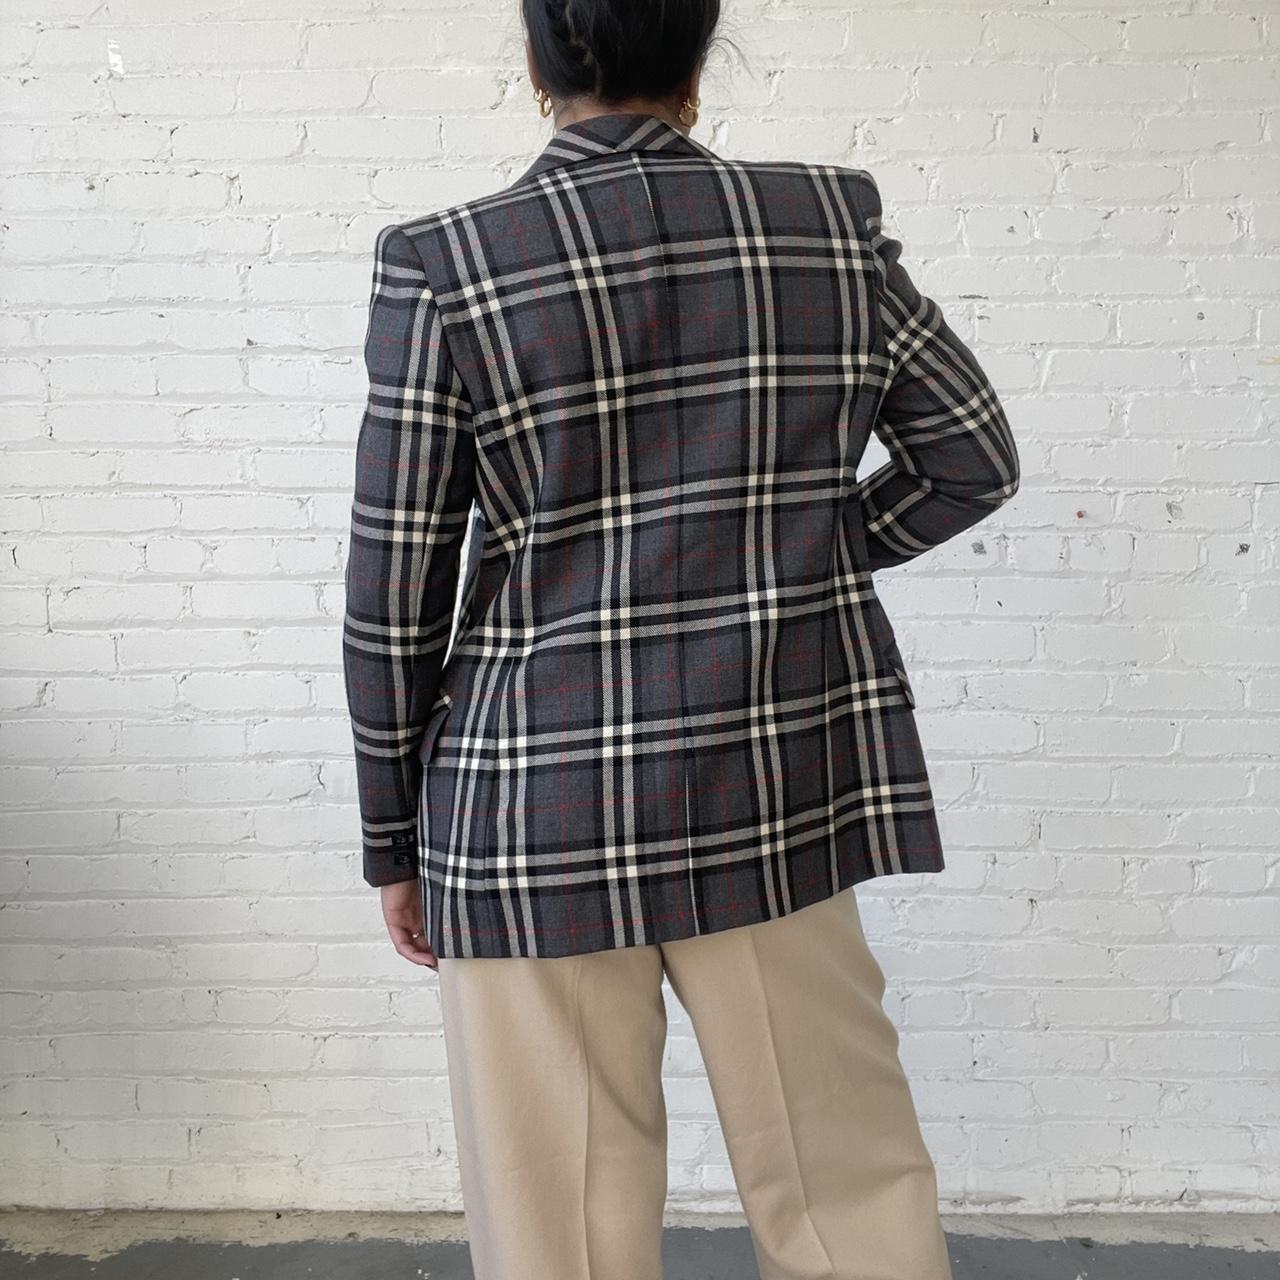 Vintage 90s Escada jacket. Herringbone pattern baby - Depop